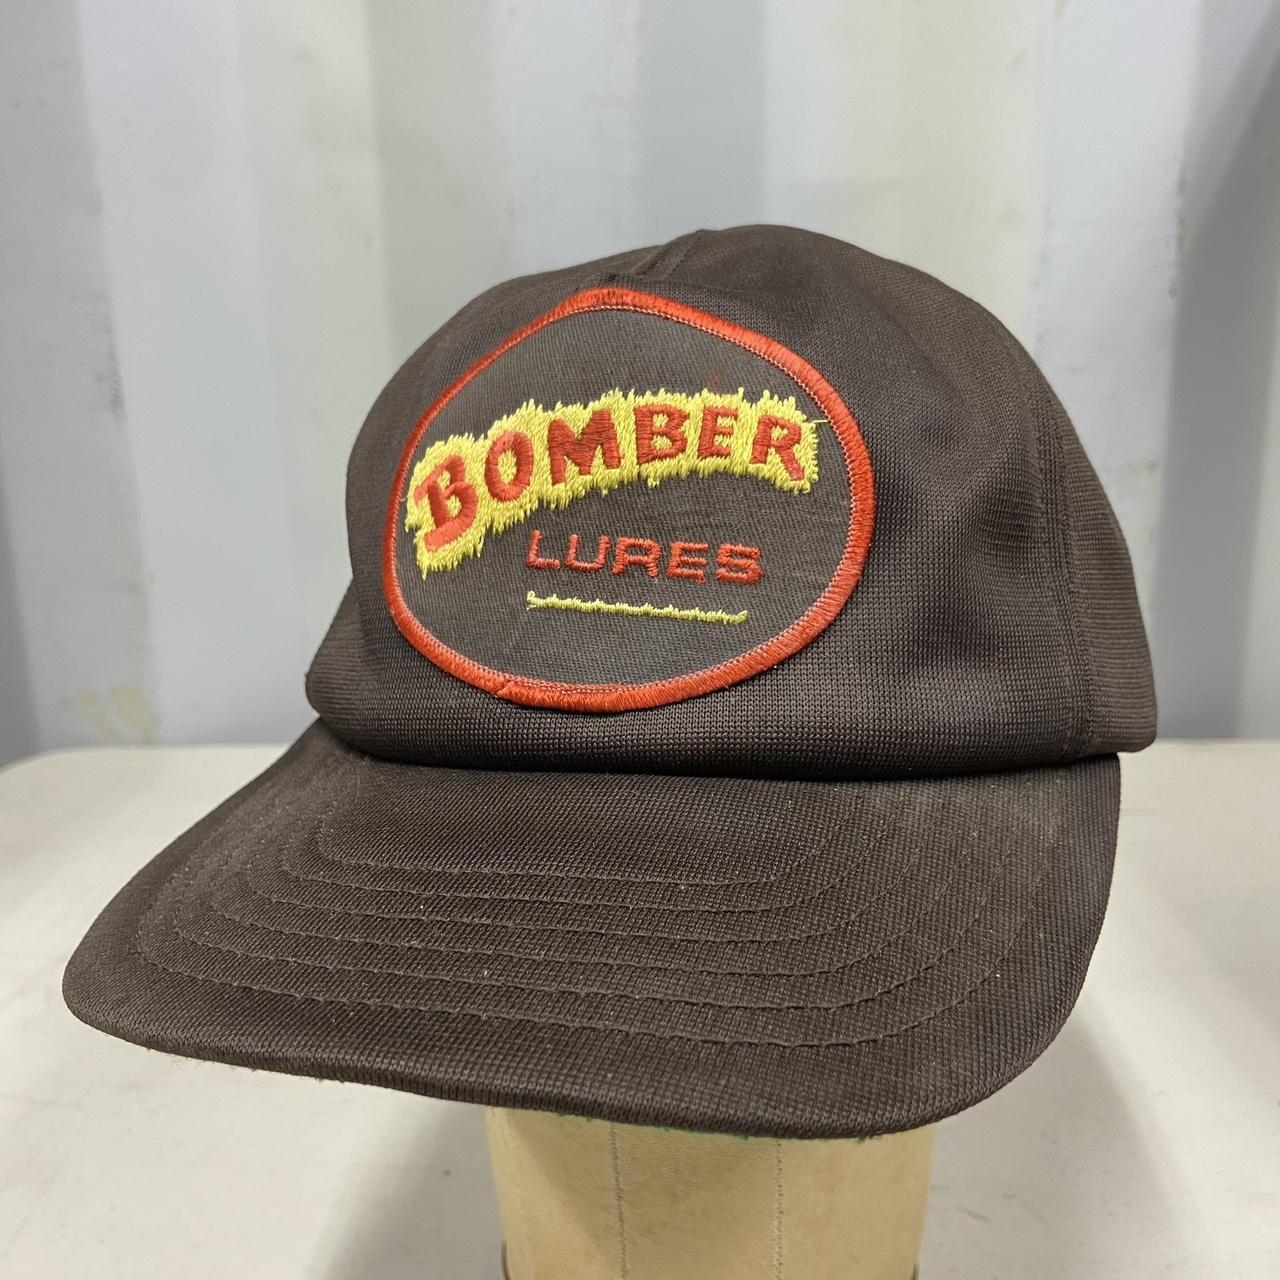 Vintage bomber fishing lures snapback hat good - Depop